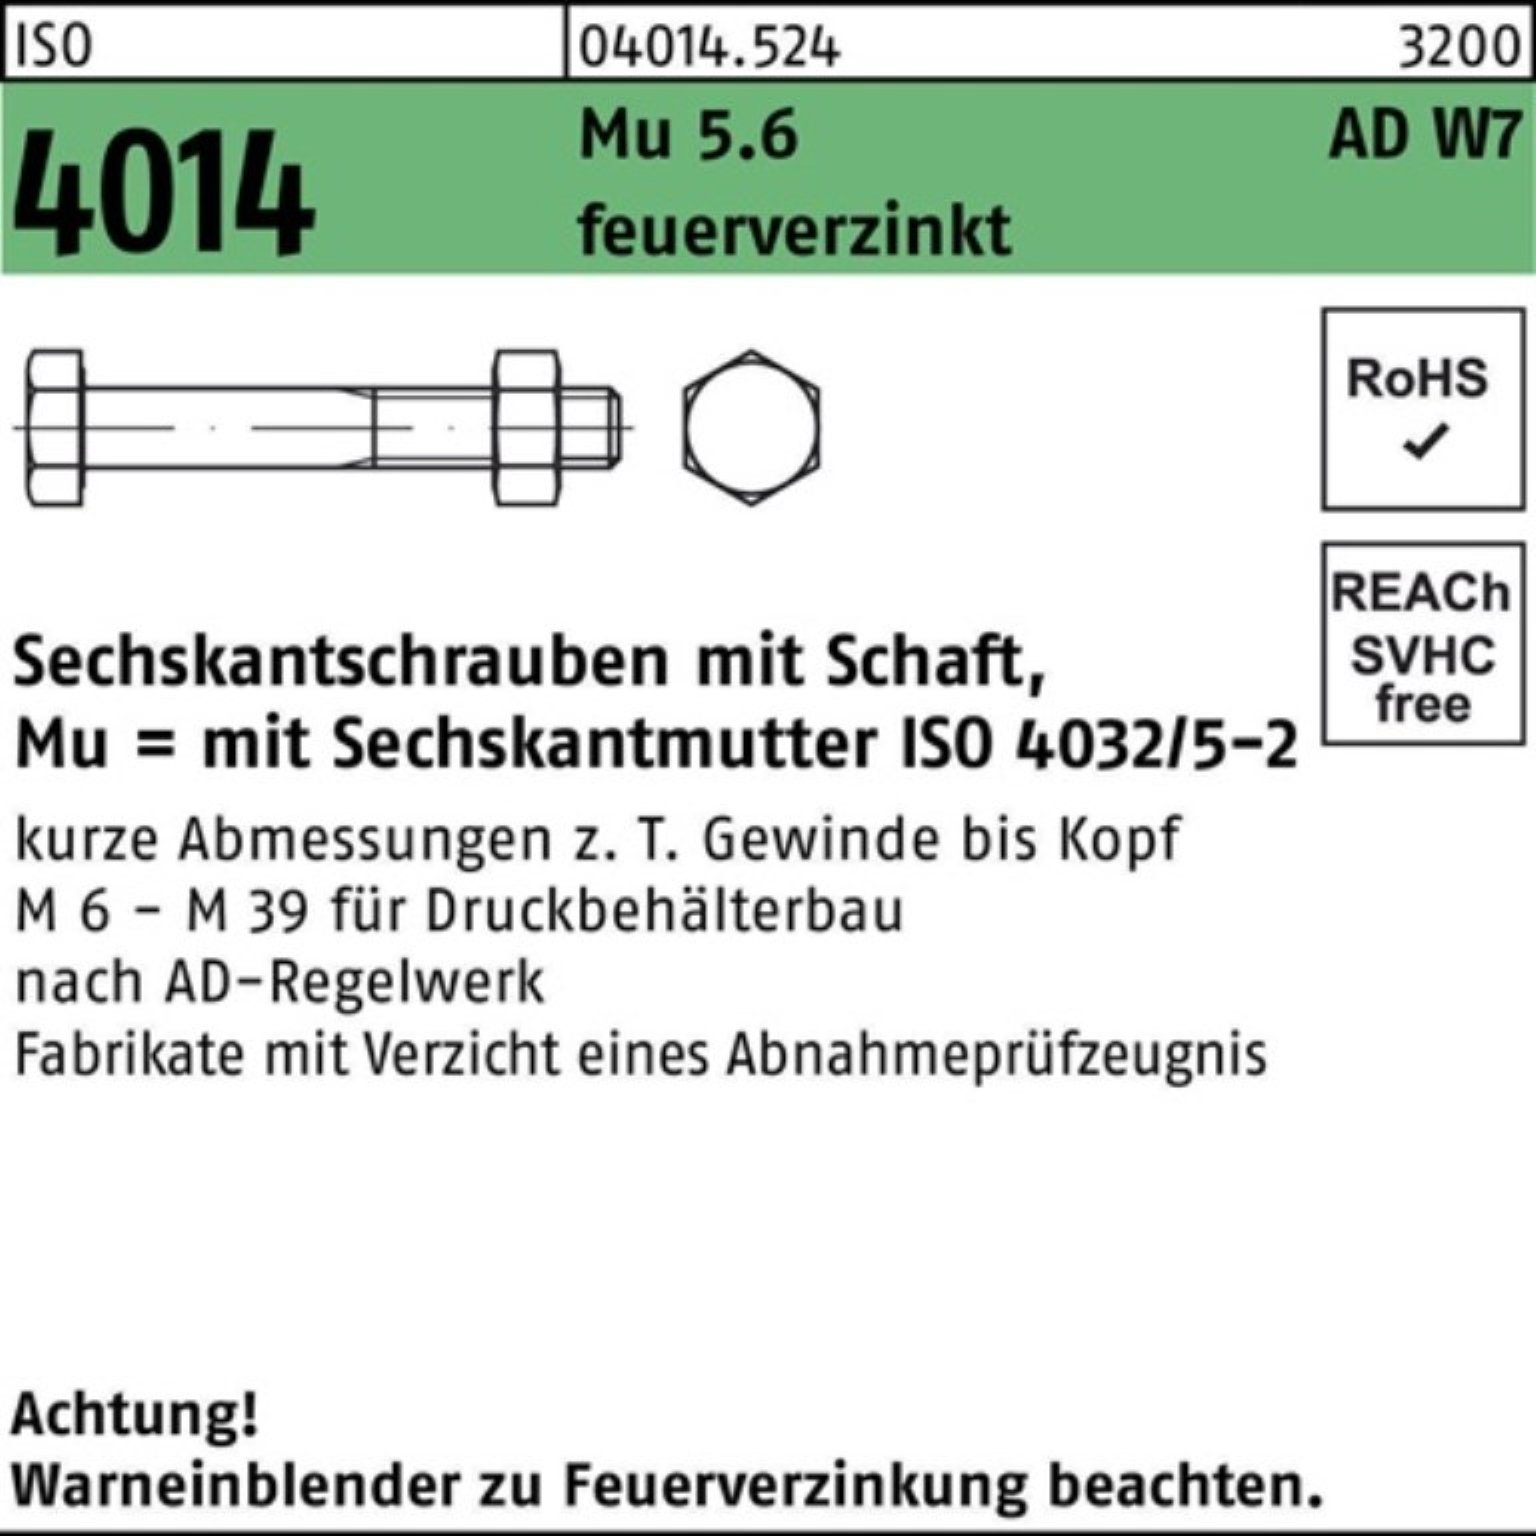 ISO Sechskantschraube 4014 Schaft 100er Pack Mu Sechskantschraube W7 Bufab M16x 5.6 feuerve 80